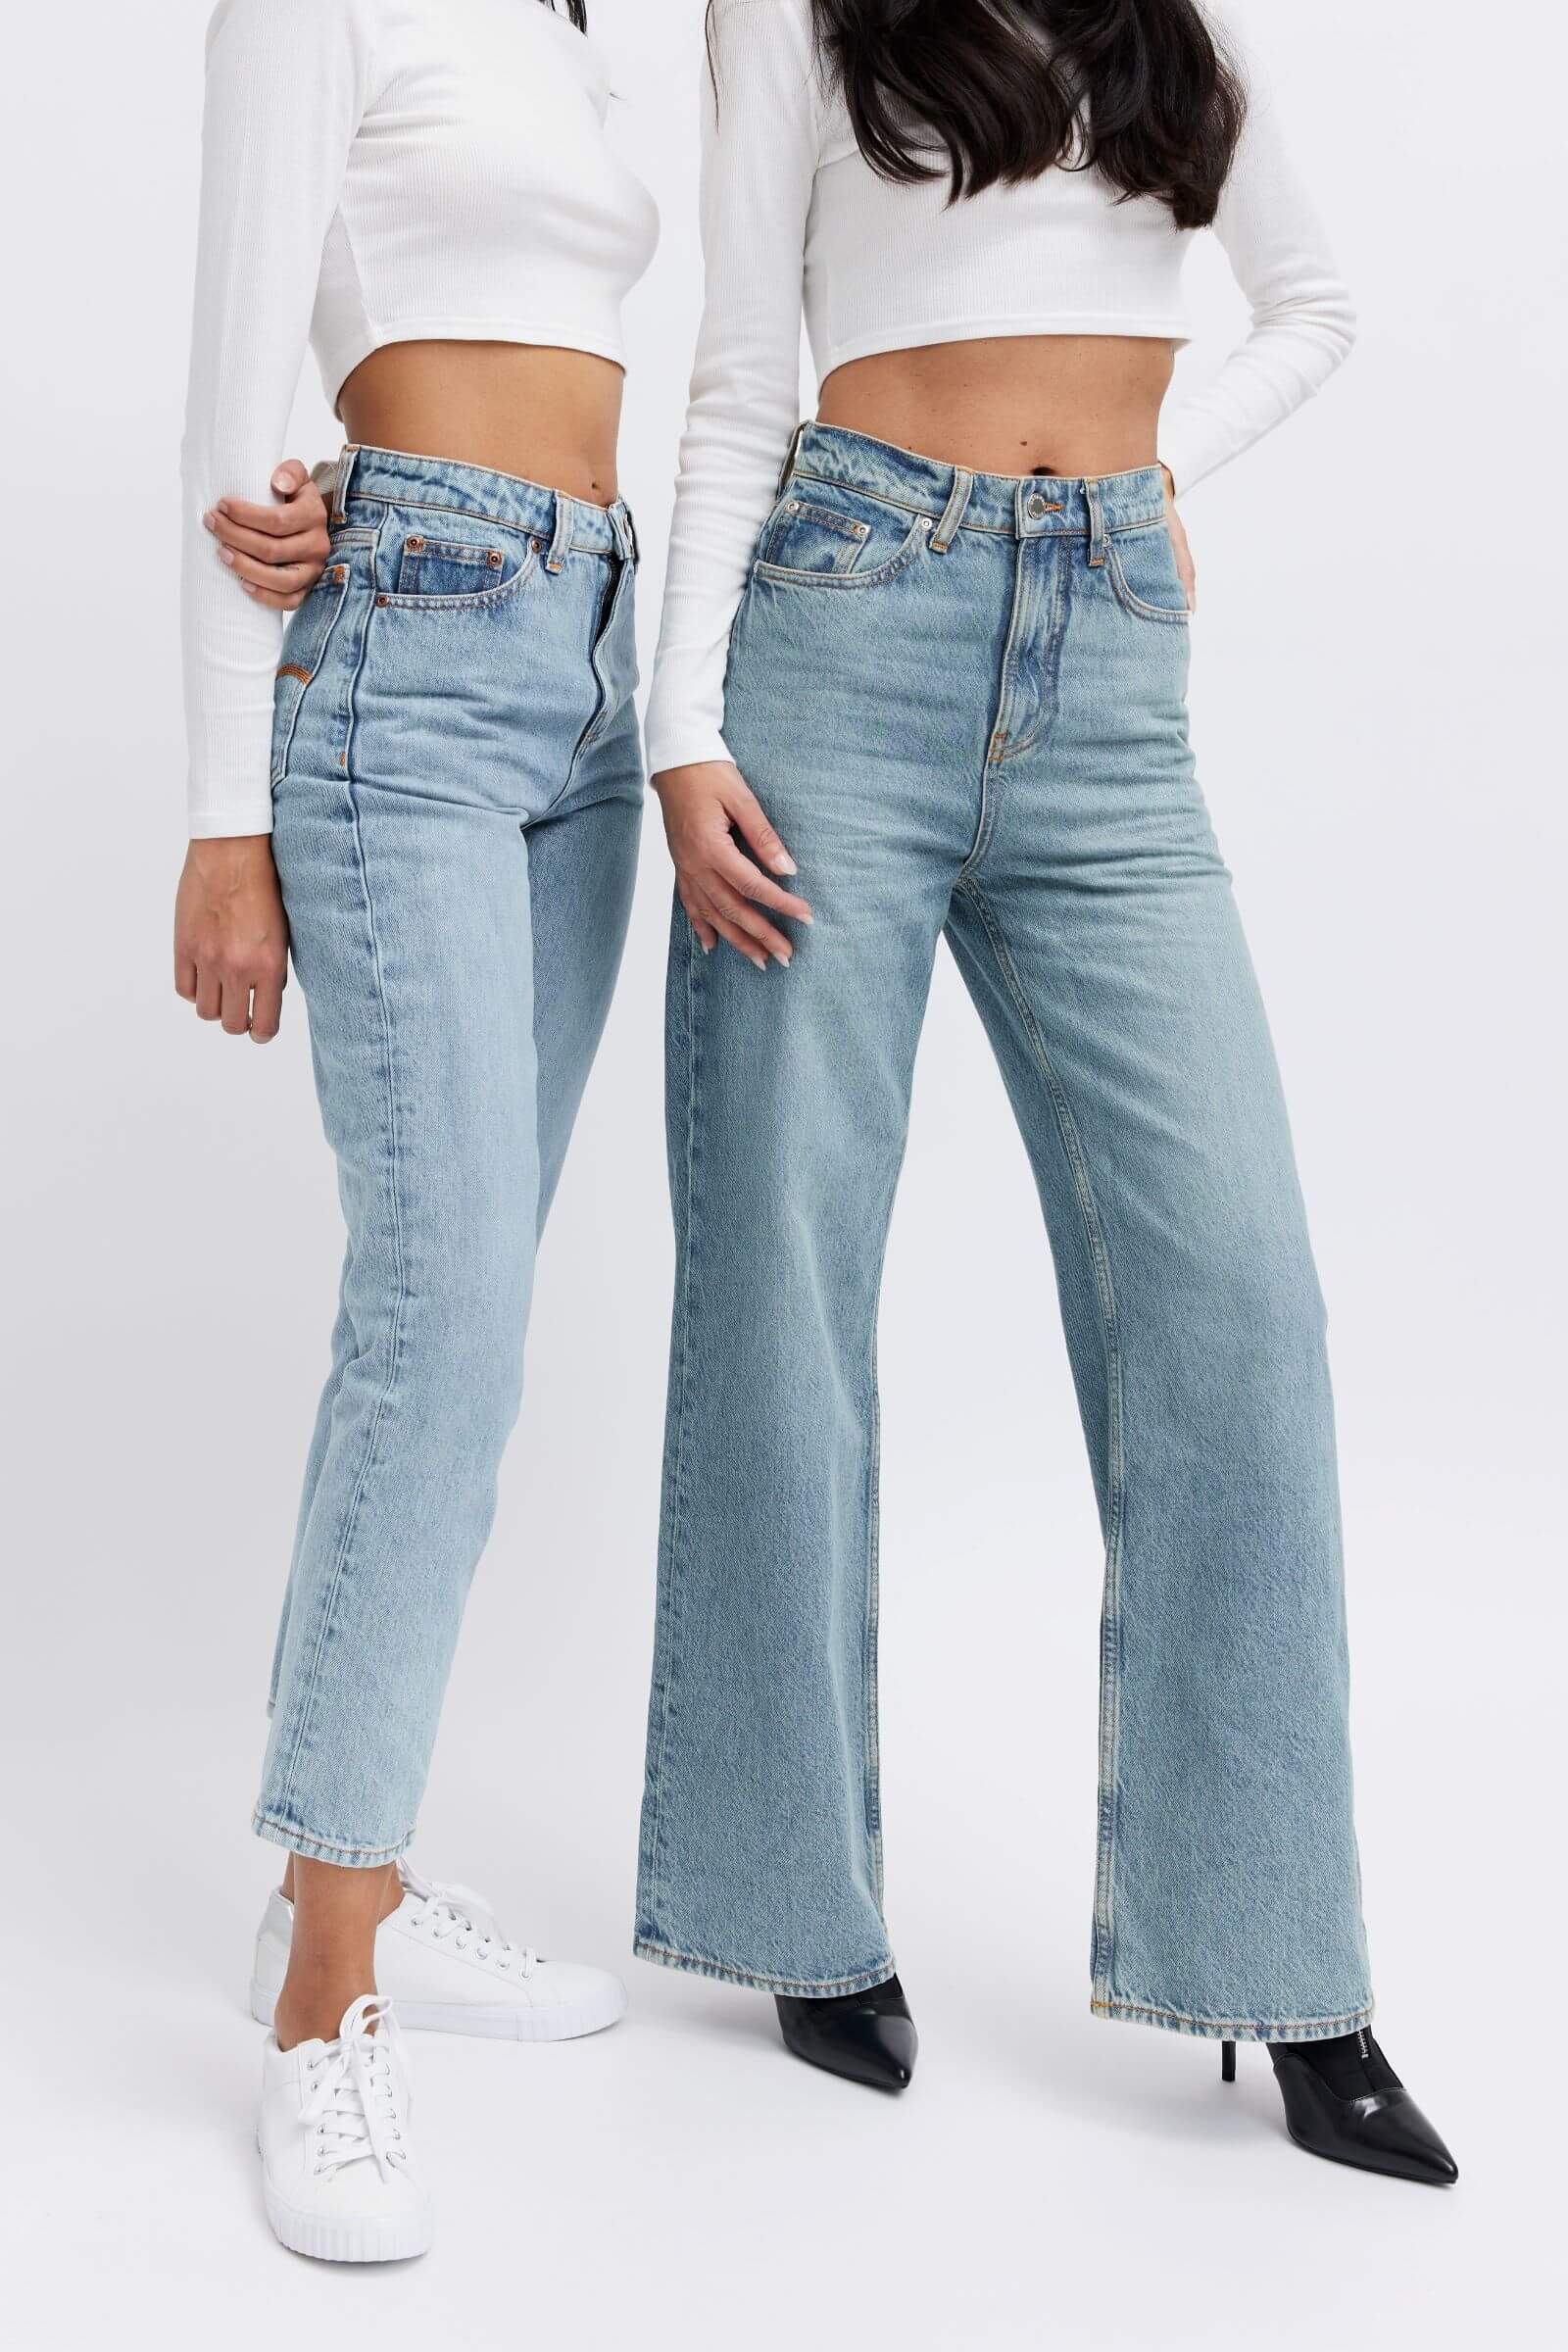 Organic & Stylish Jeans - Women's perfect fits